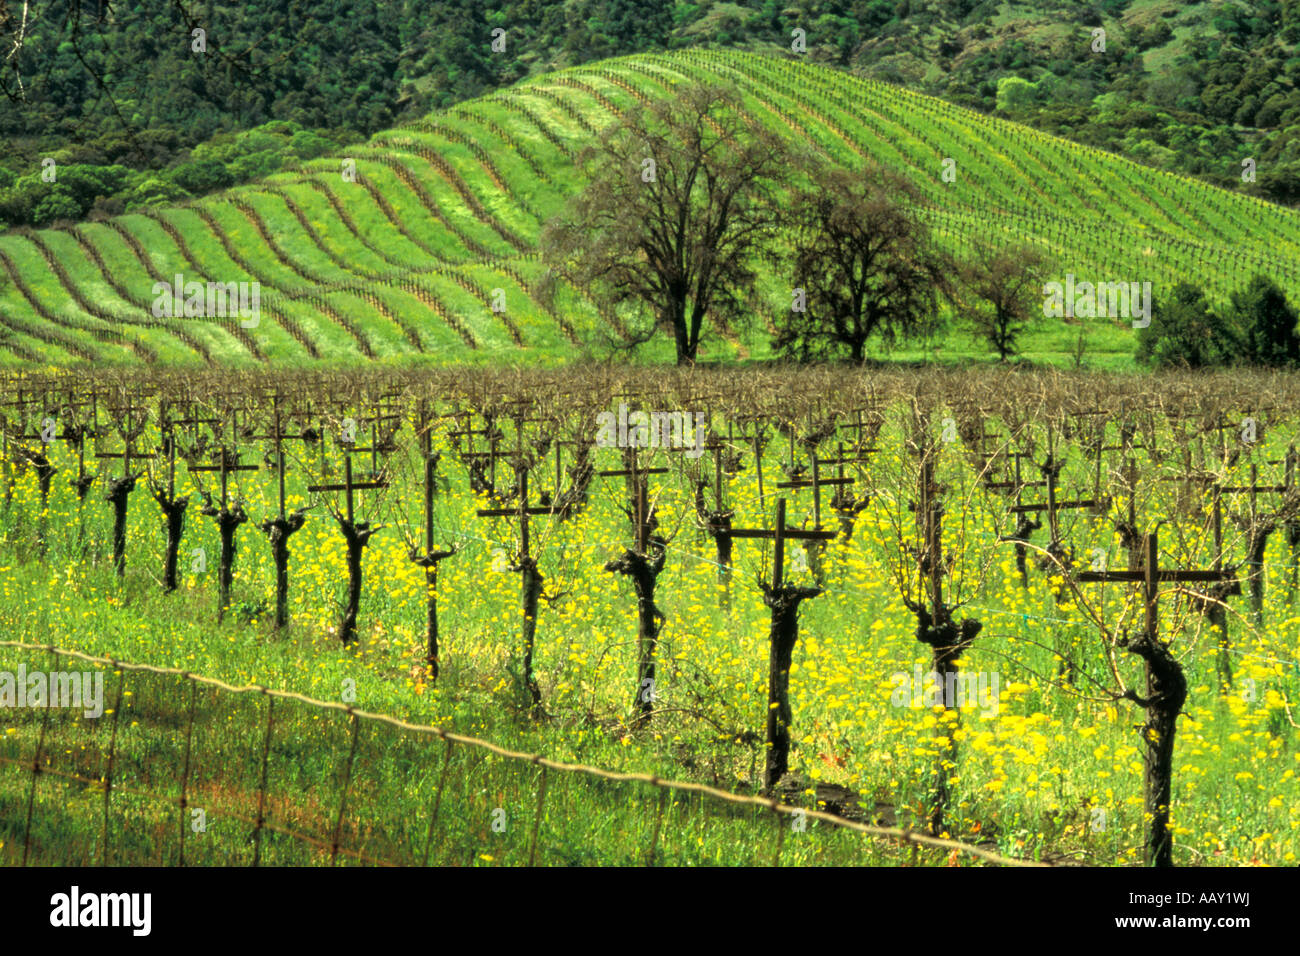 Vecchie Vigne che crescono in una vigna durante la primavera quando i campi sono di colore verde e la senape è orizzontale in fiore Foto Stock